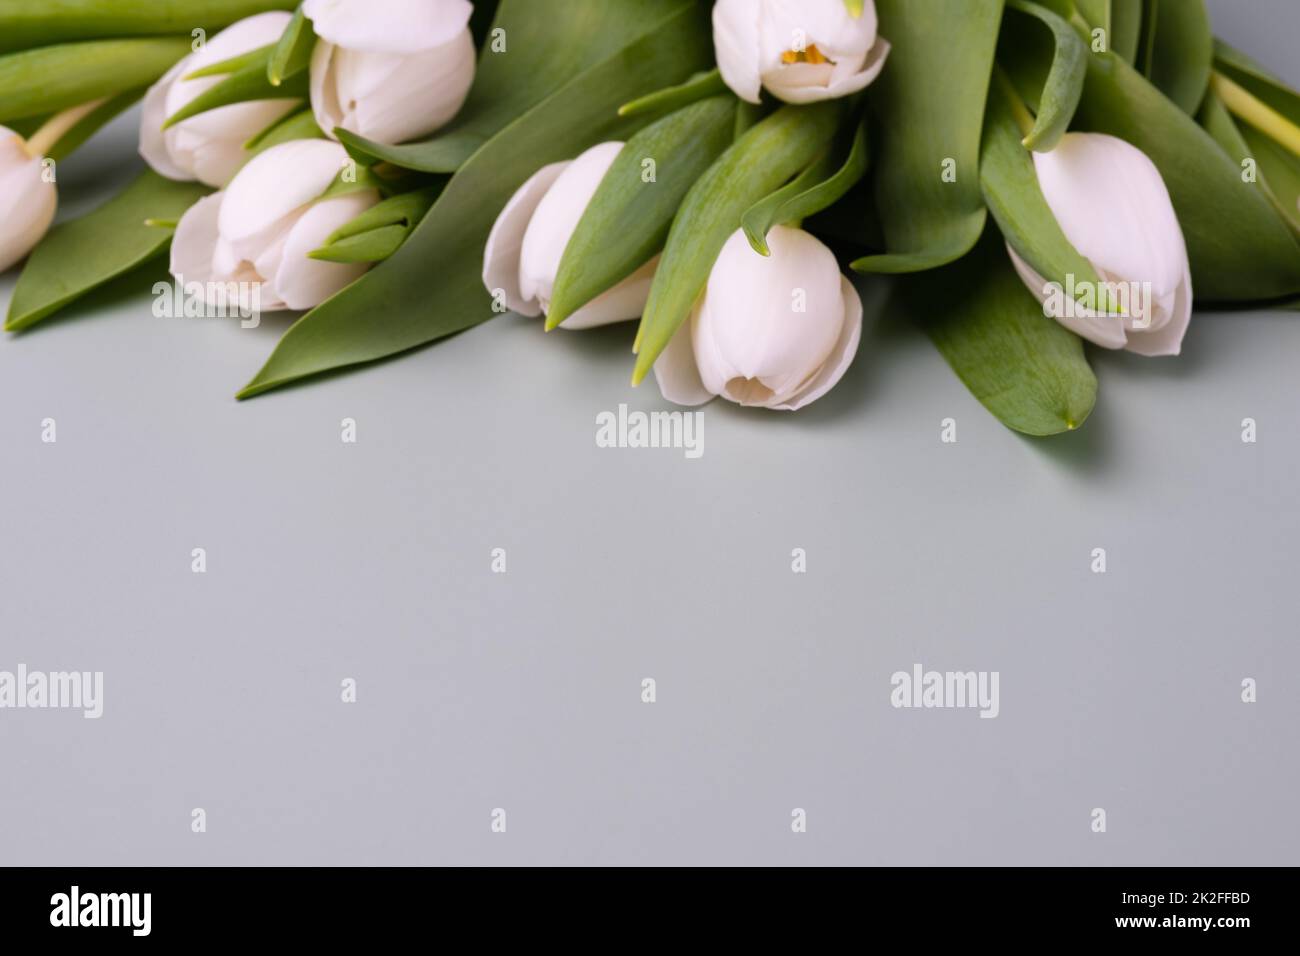 Bordo di tulipani bianchi su sfondo grigio chiaro. Mockup per il biglietto d'auguri di primavera. Foto Stock